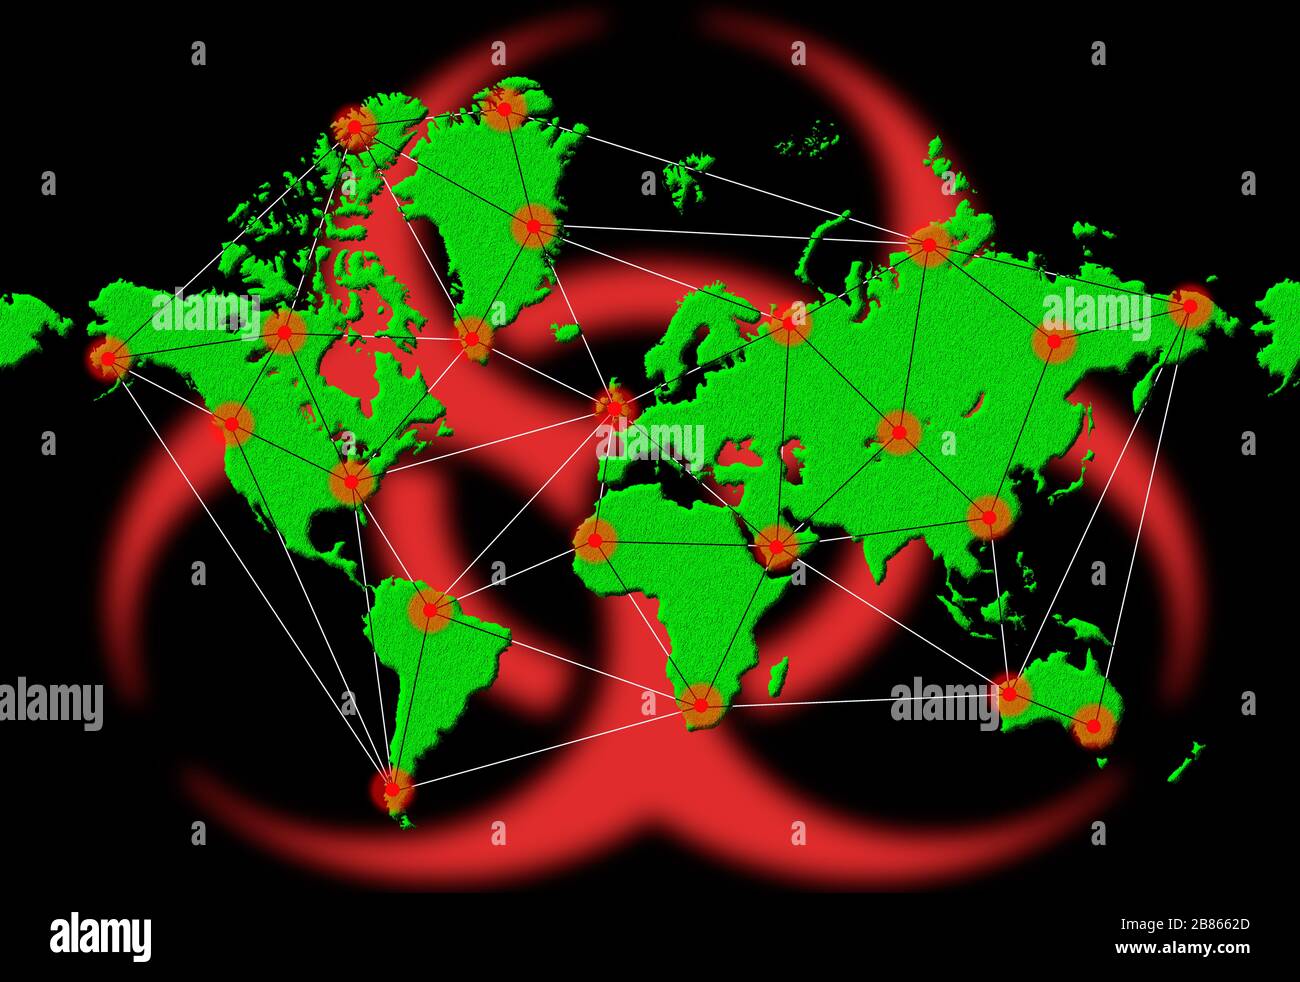 Illustration ou graphique montrant la propagation mondiale de l'infection ou du virus infectieux sur la carte mondiale lors d'une pandémie de virus Coronavirus COVID 19.virus. Banque D'Images